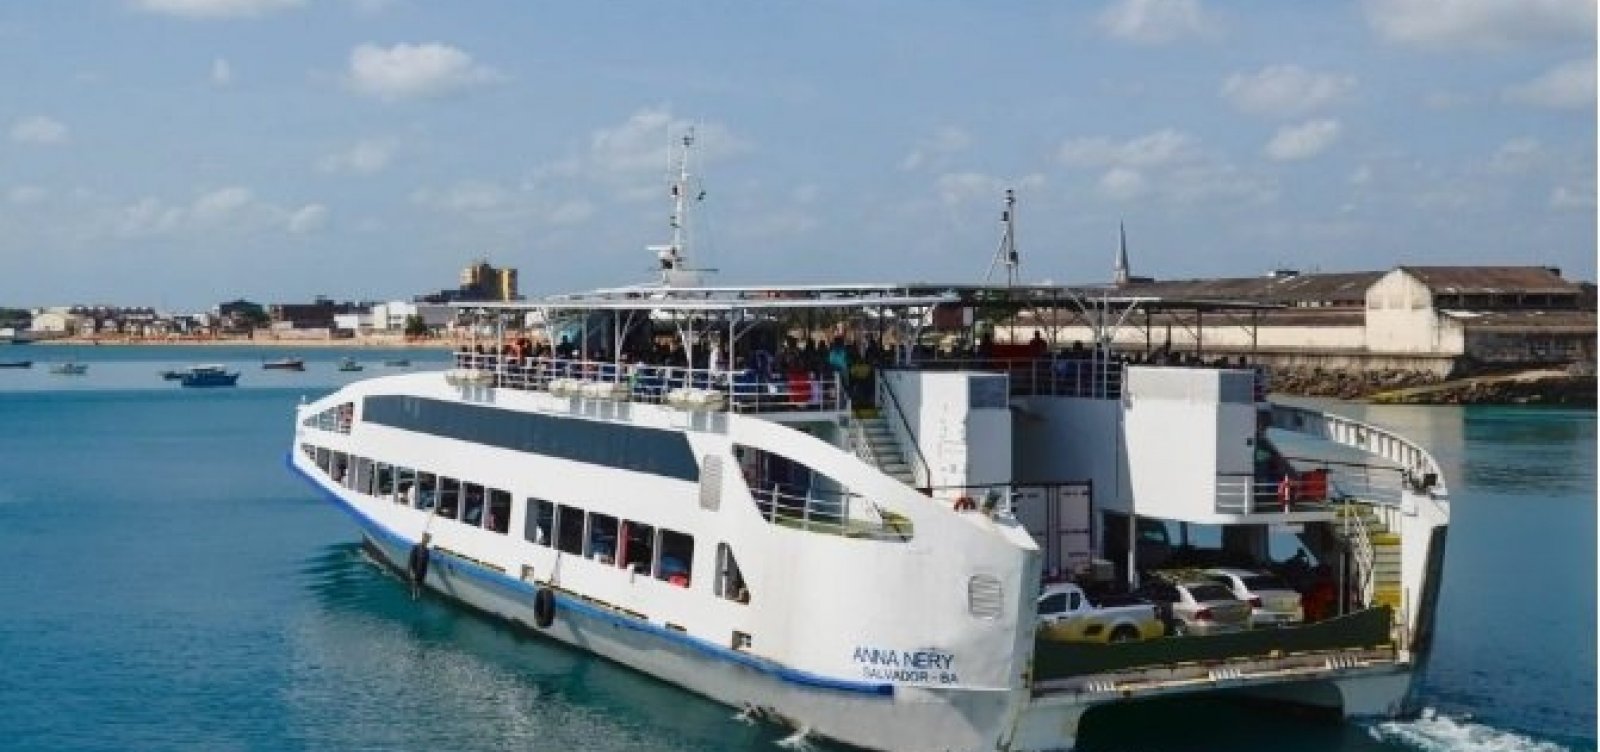 Ferry-boat funciona com nova tabela de preços a partir de amanhã